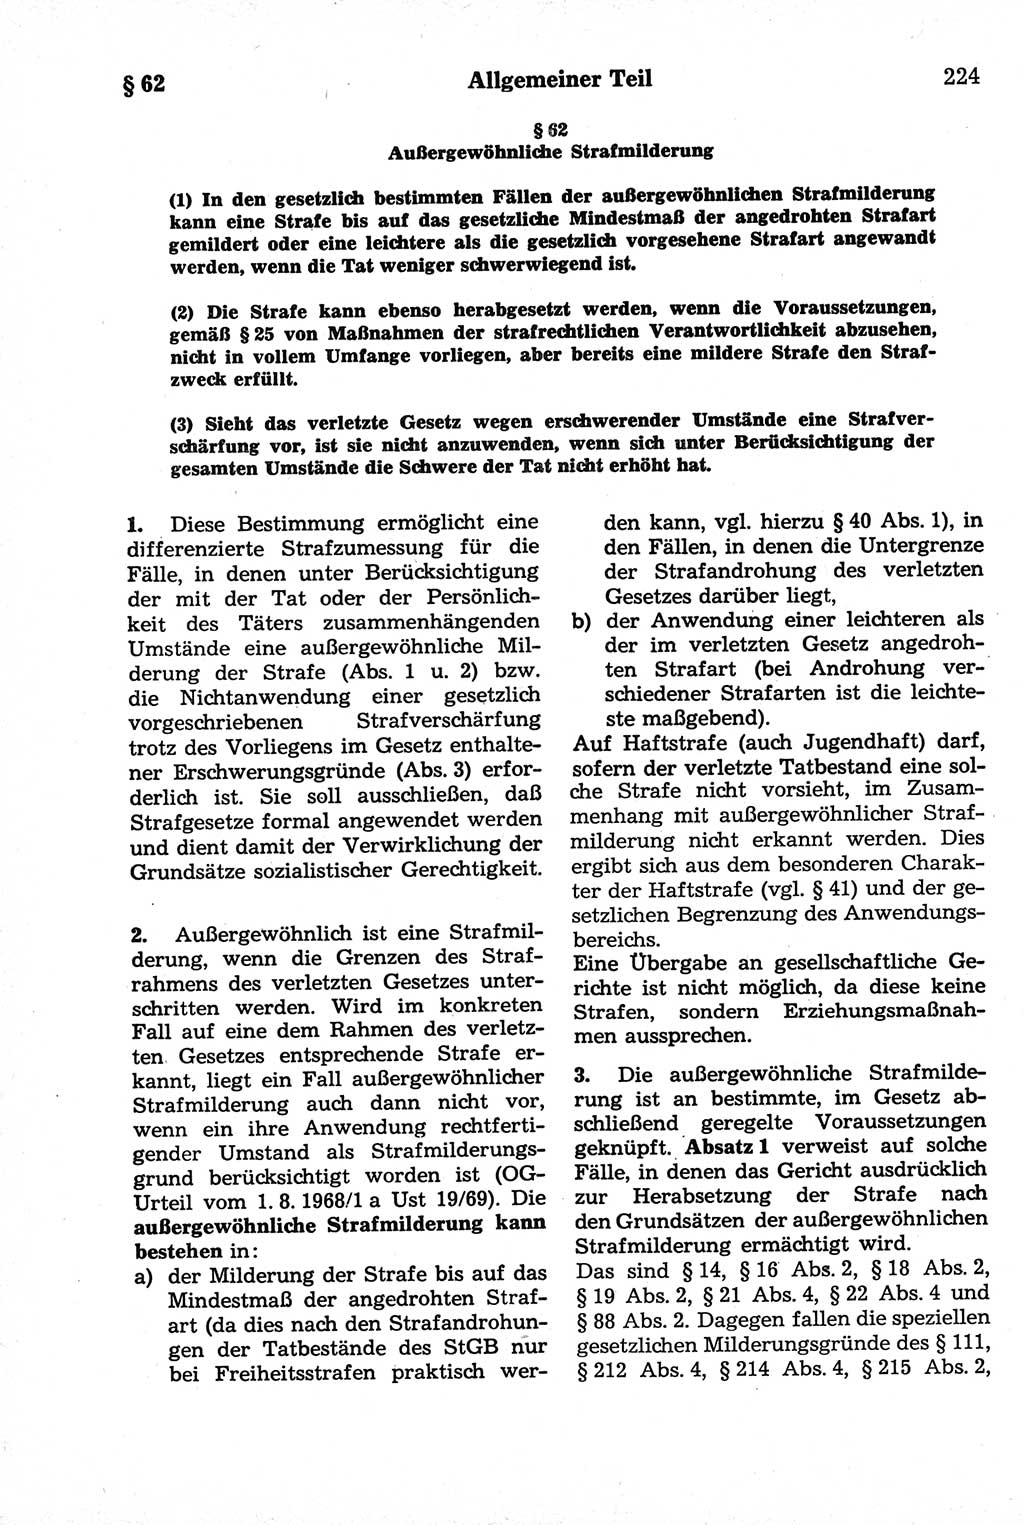 Strafrecht der Deutschen Demokratischen Republik (DDR), Kommentar zum Strafgesetzbuch (StGB) 1981, Seite 224 (Strafr. DDR Komm. StGB 1981, S. 224)